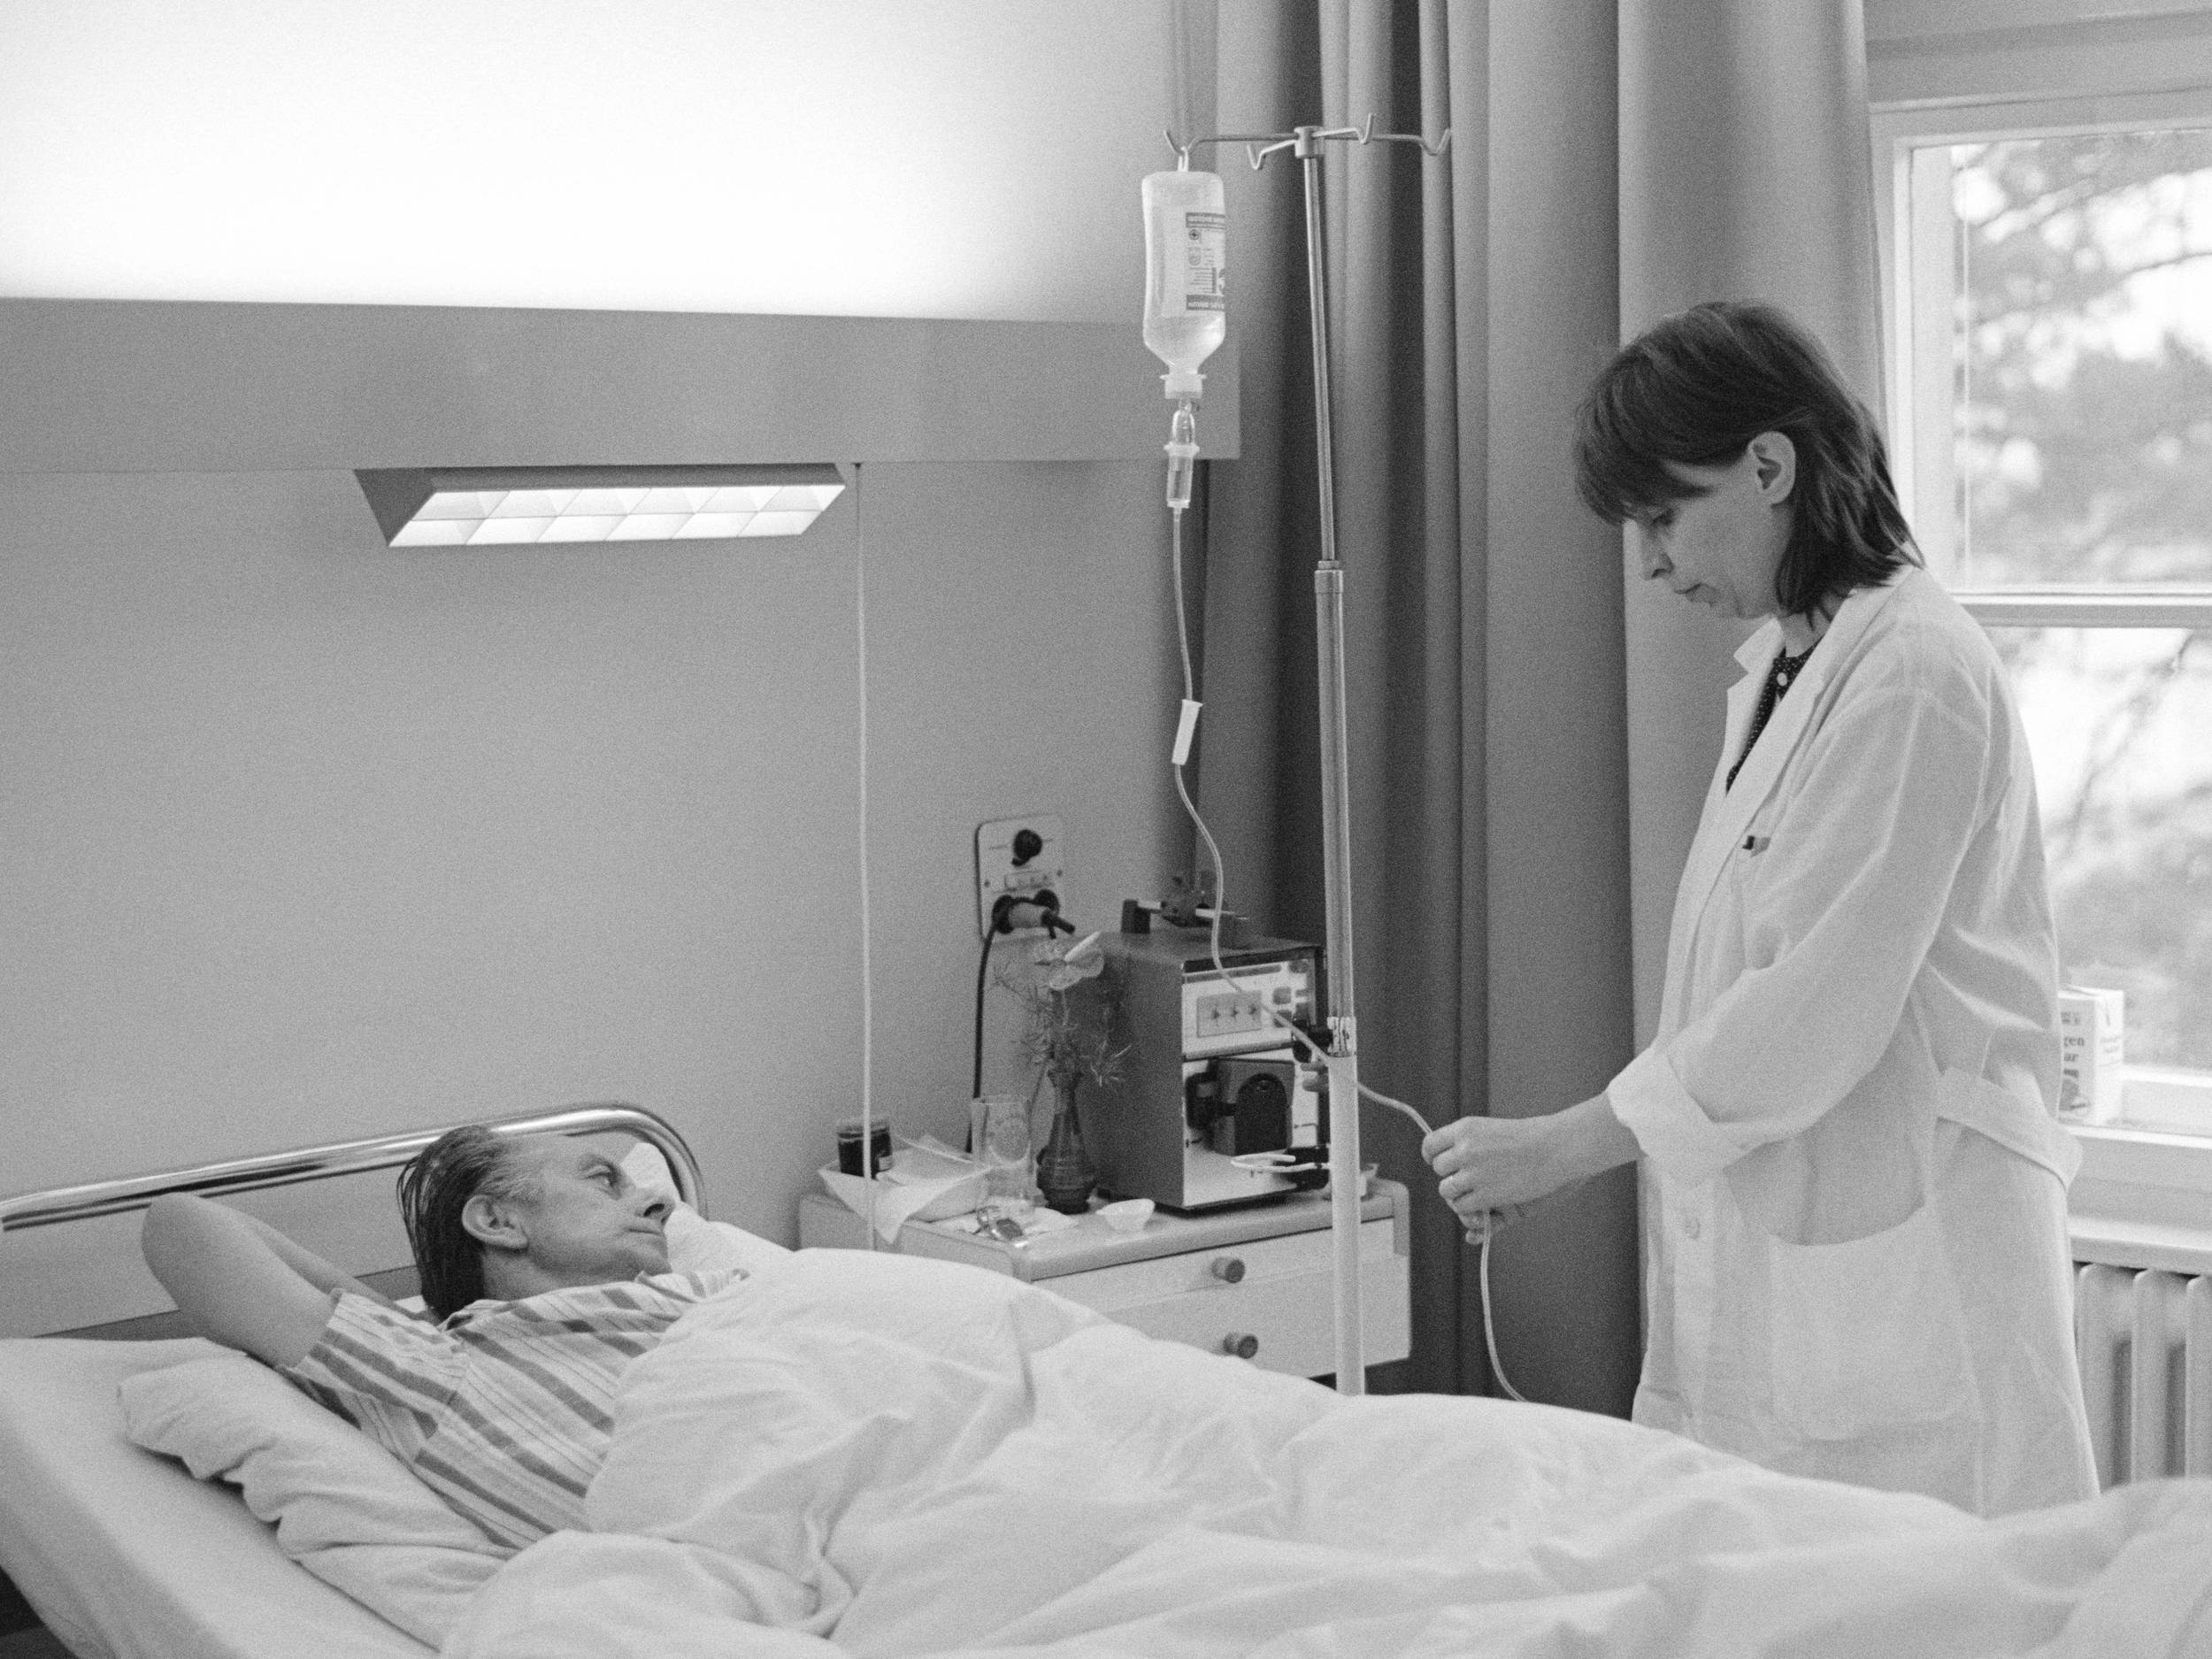 Fotografie, schwarz-weiß, von 1991: Das Foto zeigt einen, in einem Krankenhausbett liegenden Mann, der den Kopf nach rechts geneigt hat. Rechts steht eine Frau im weißem Kittel, die eine Infusion einstellt.